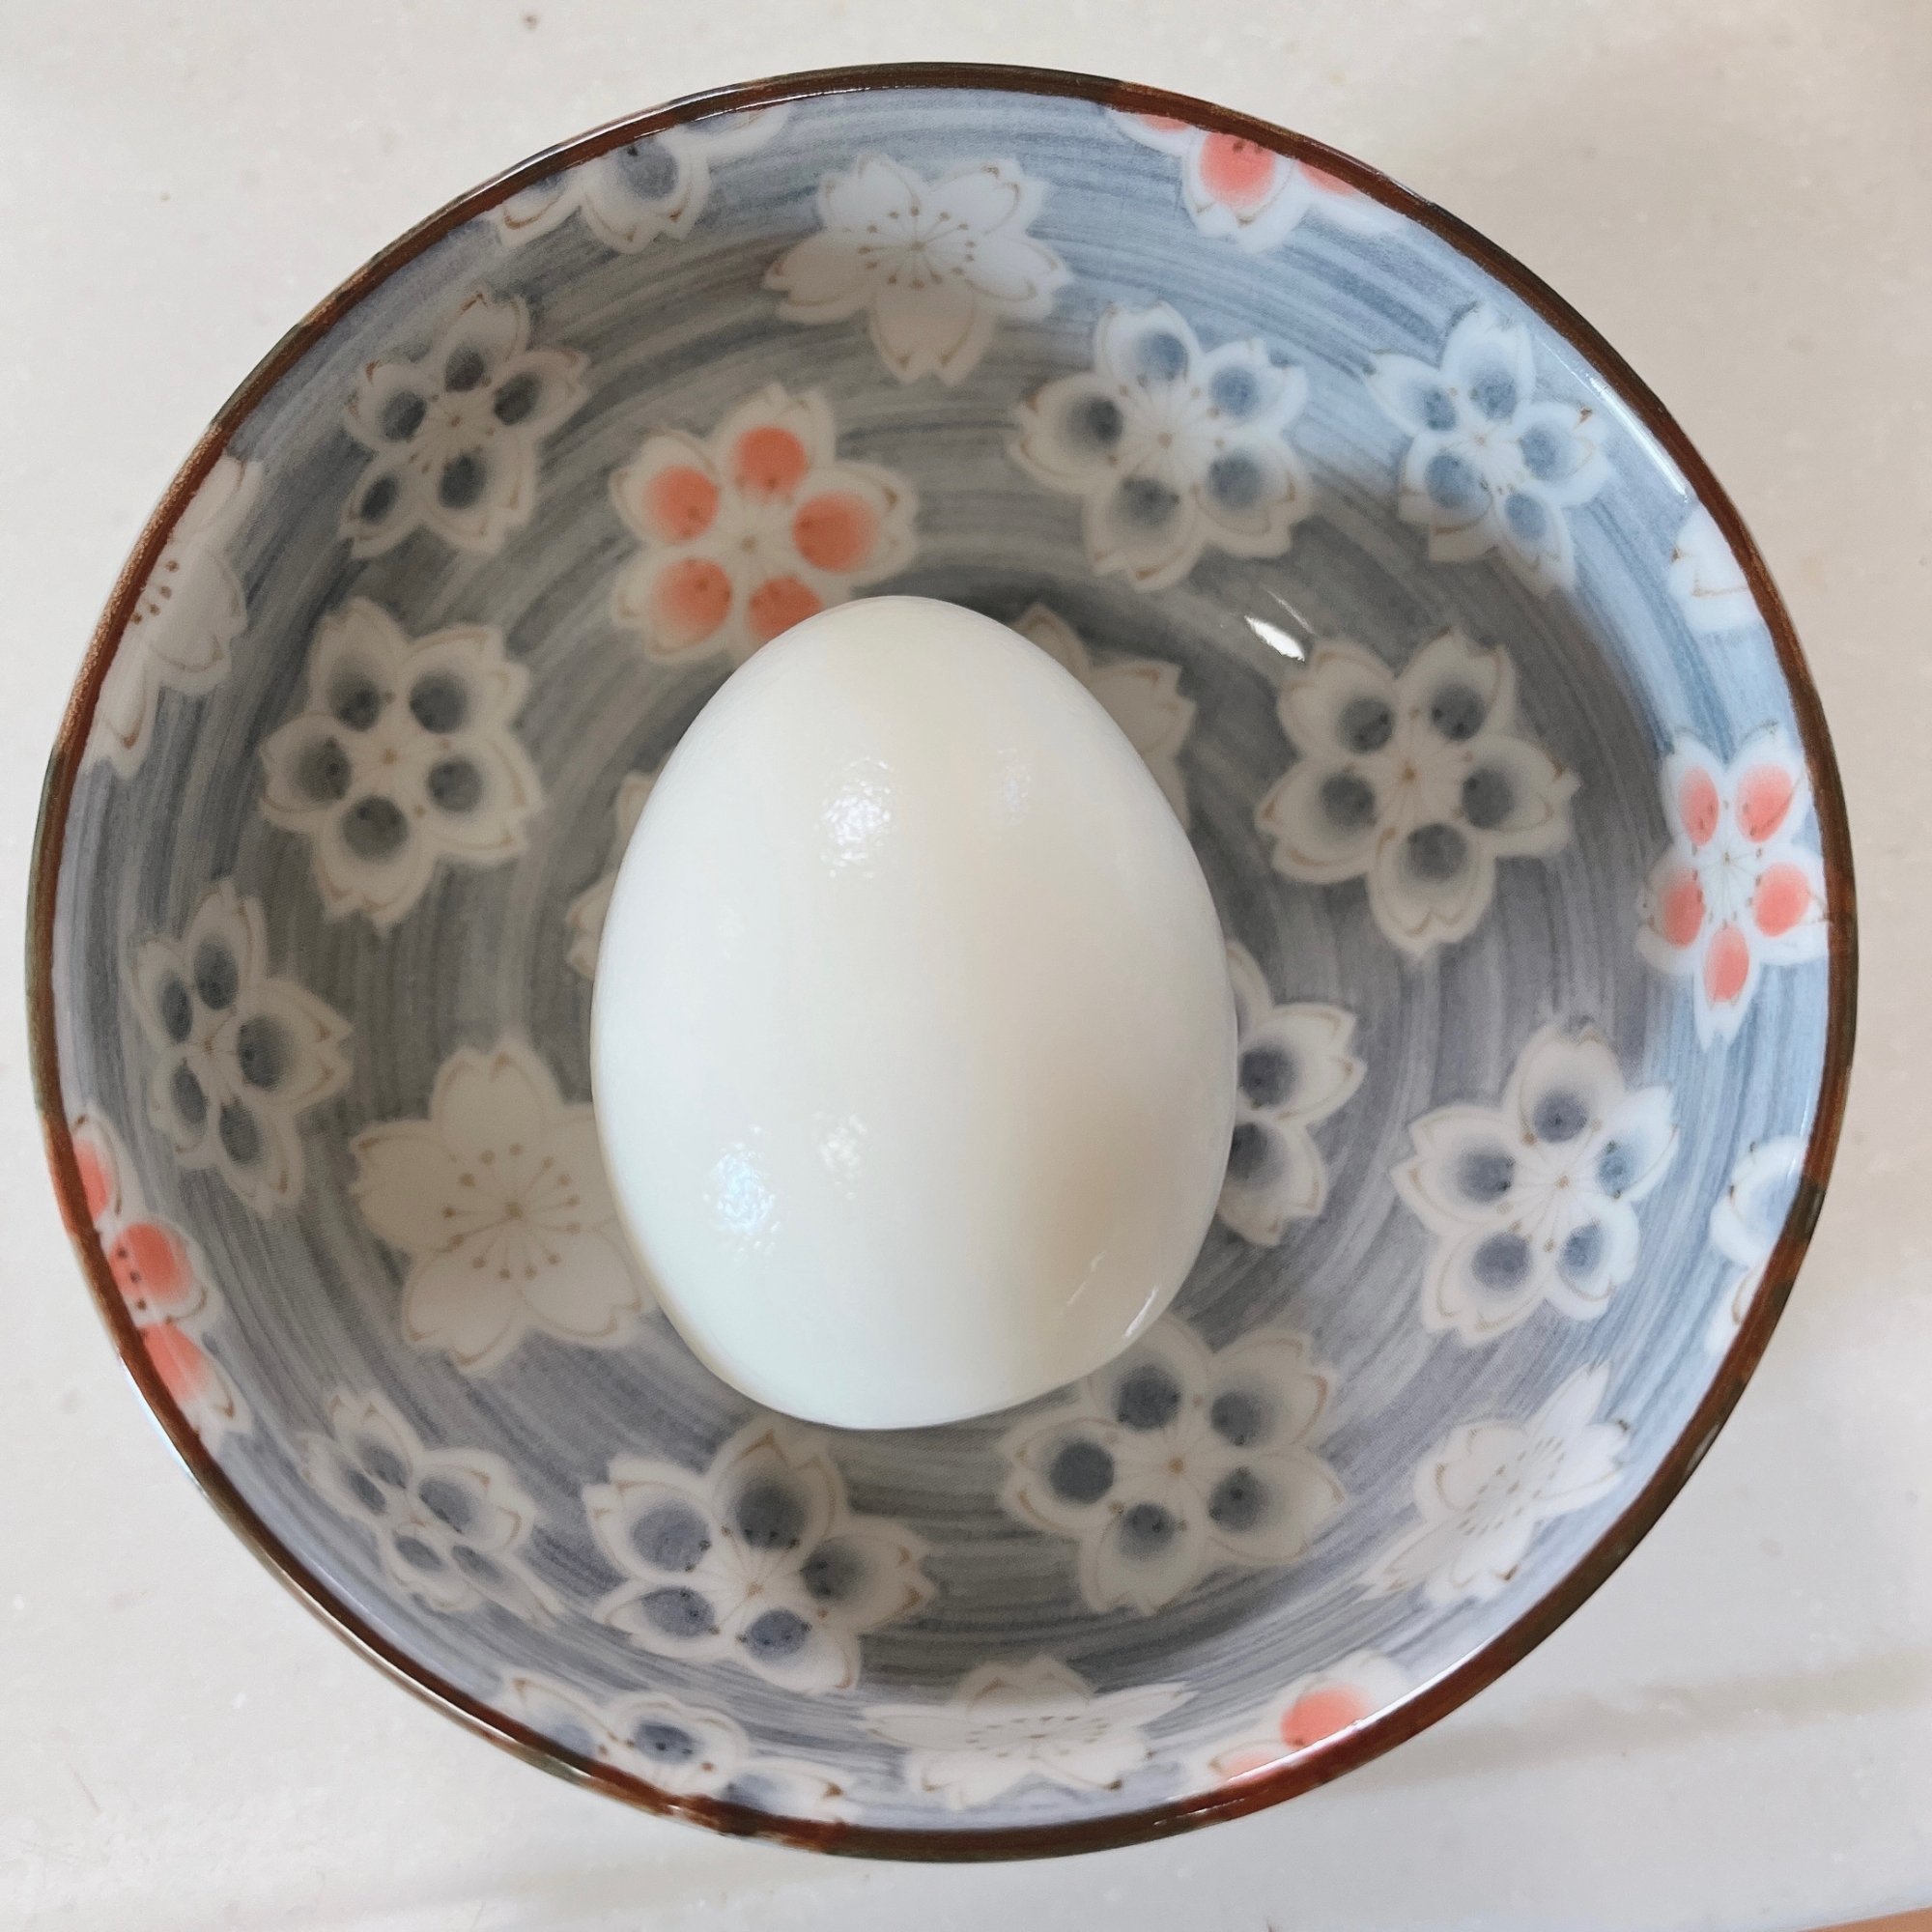 ゆで卵の綺麗な殻の剥き方